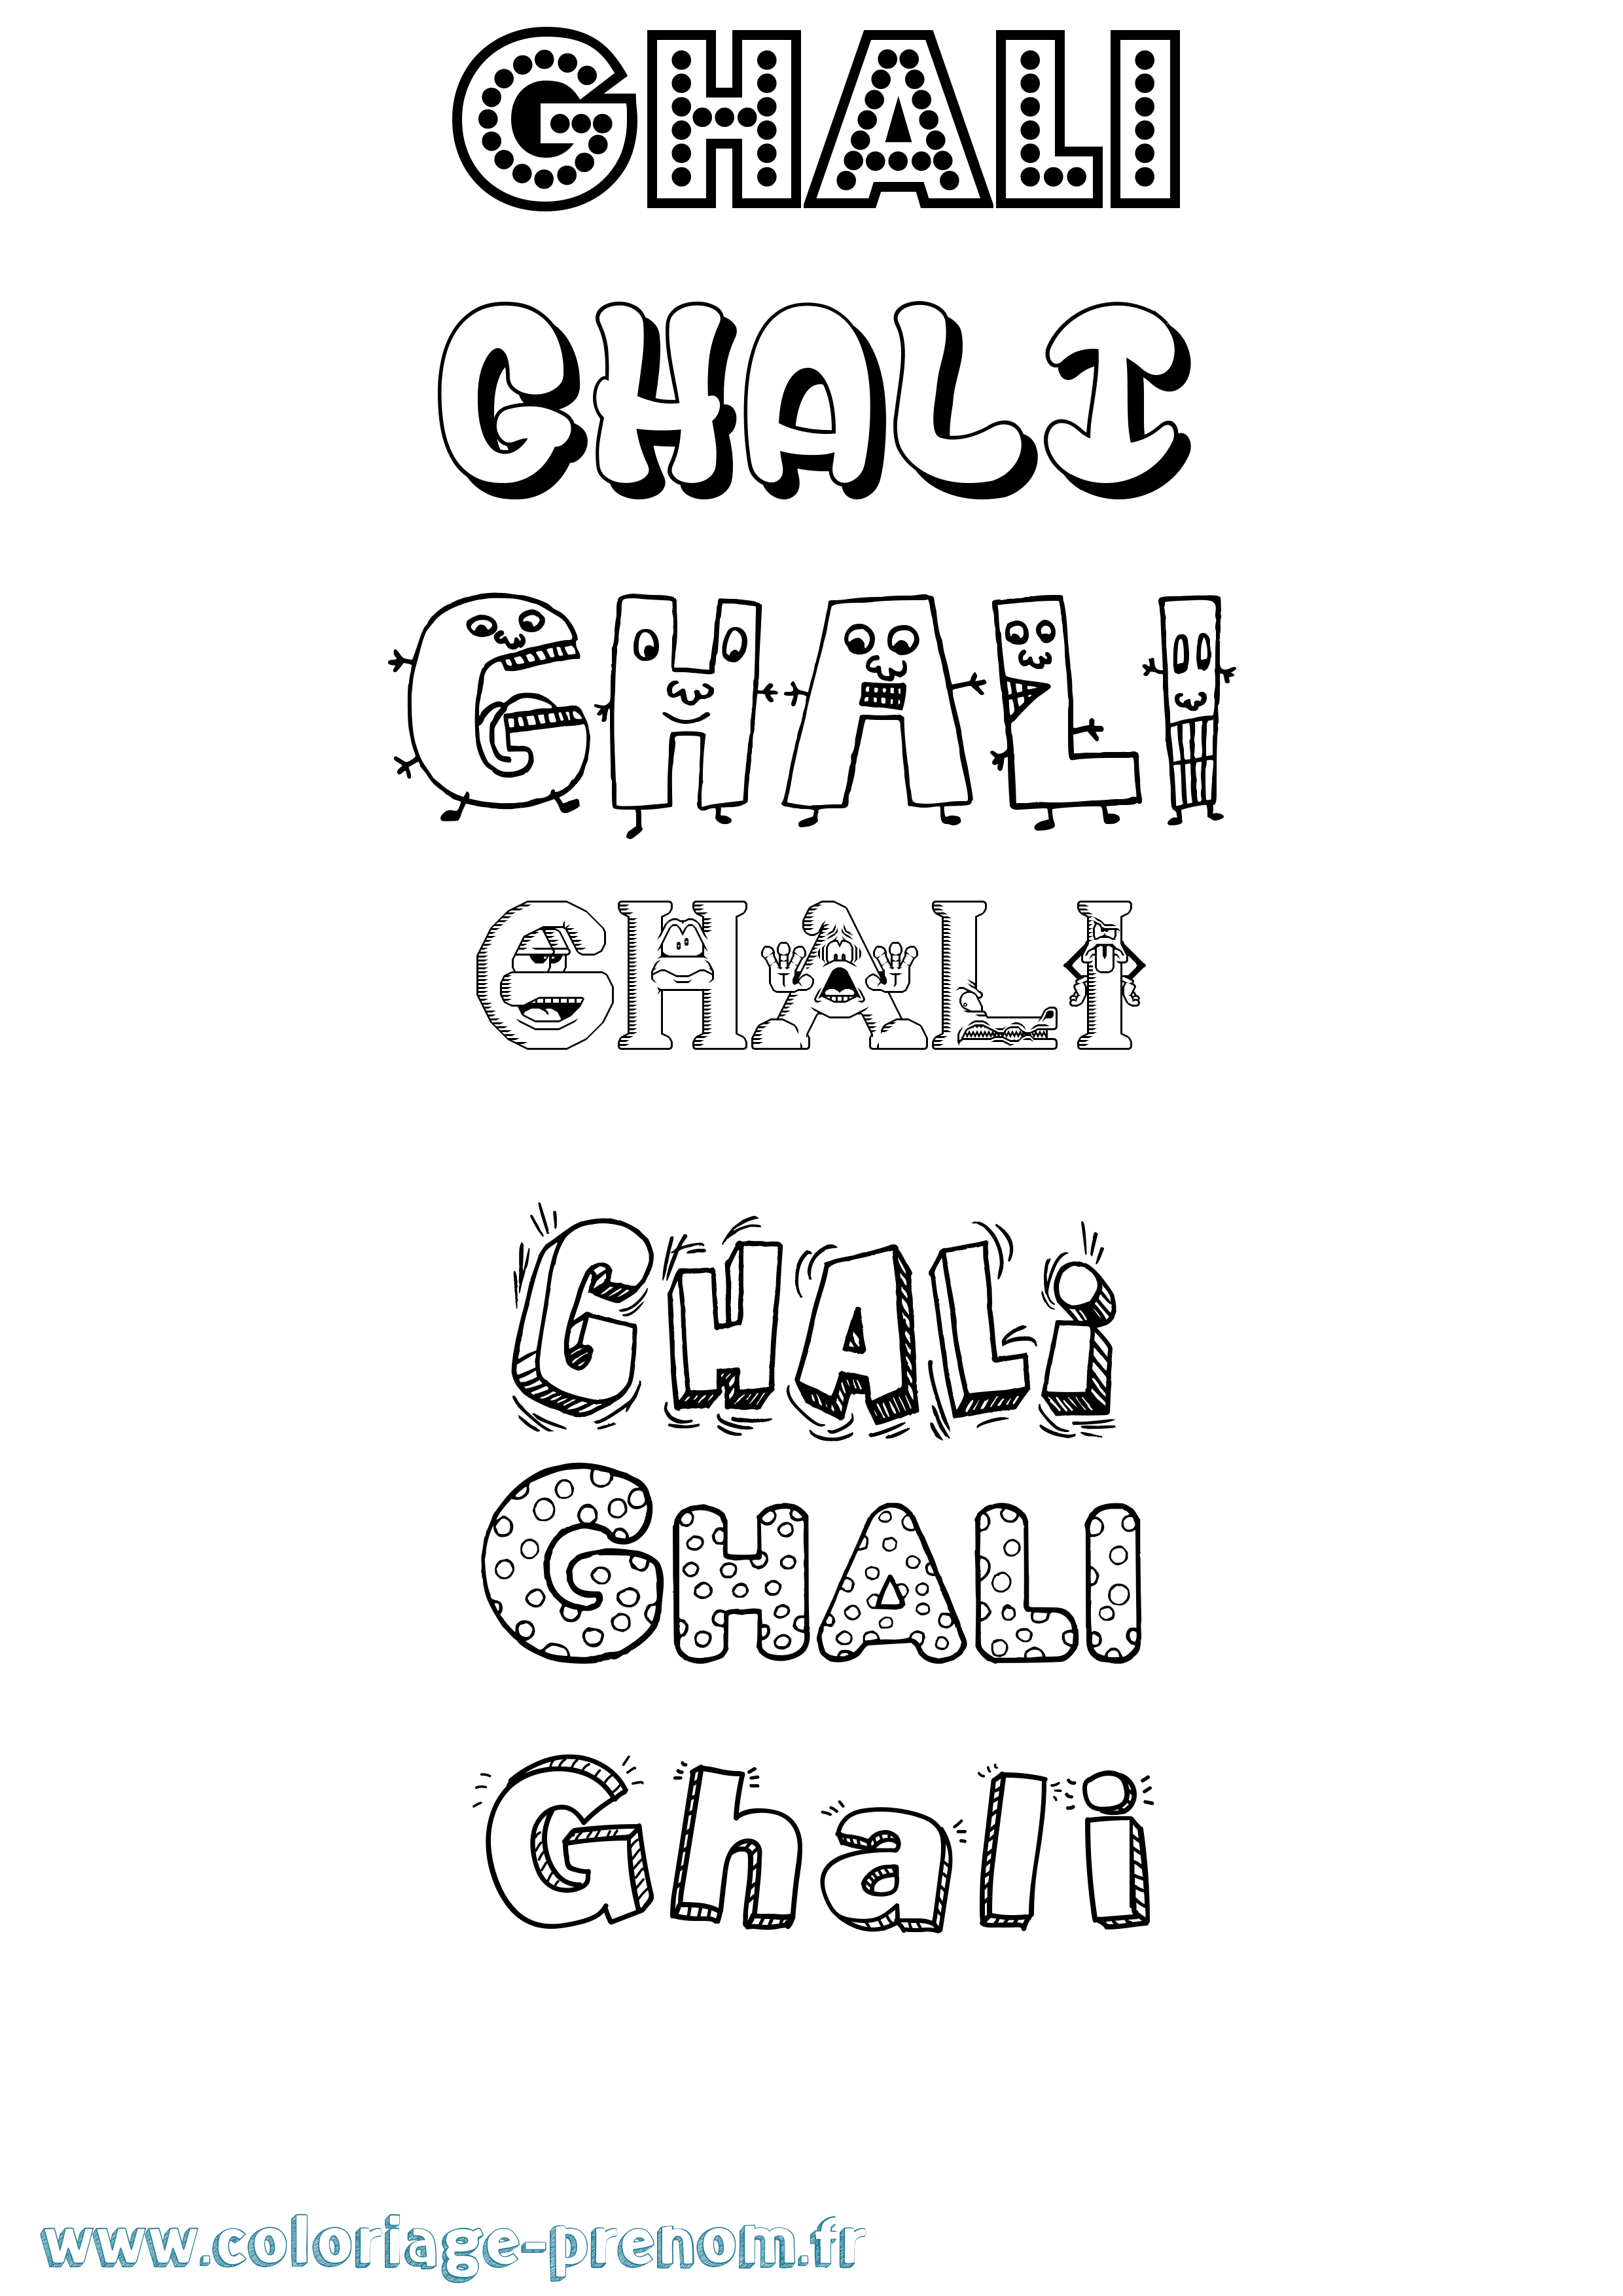 Coloriage prénom Ghali Fun